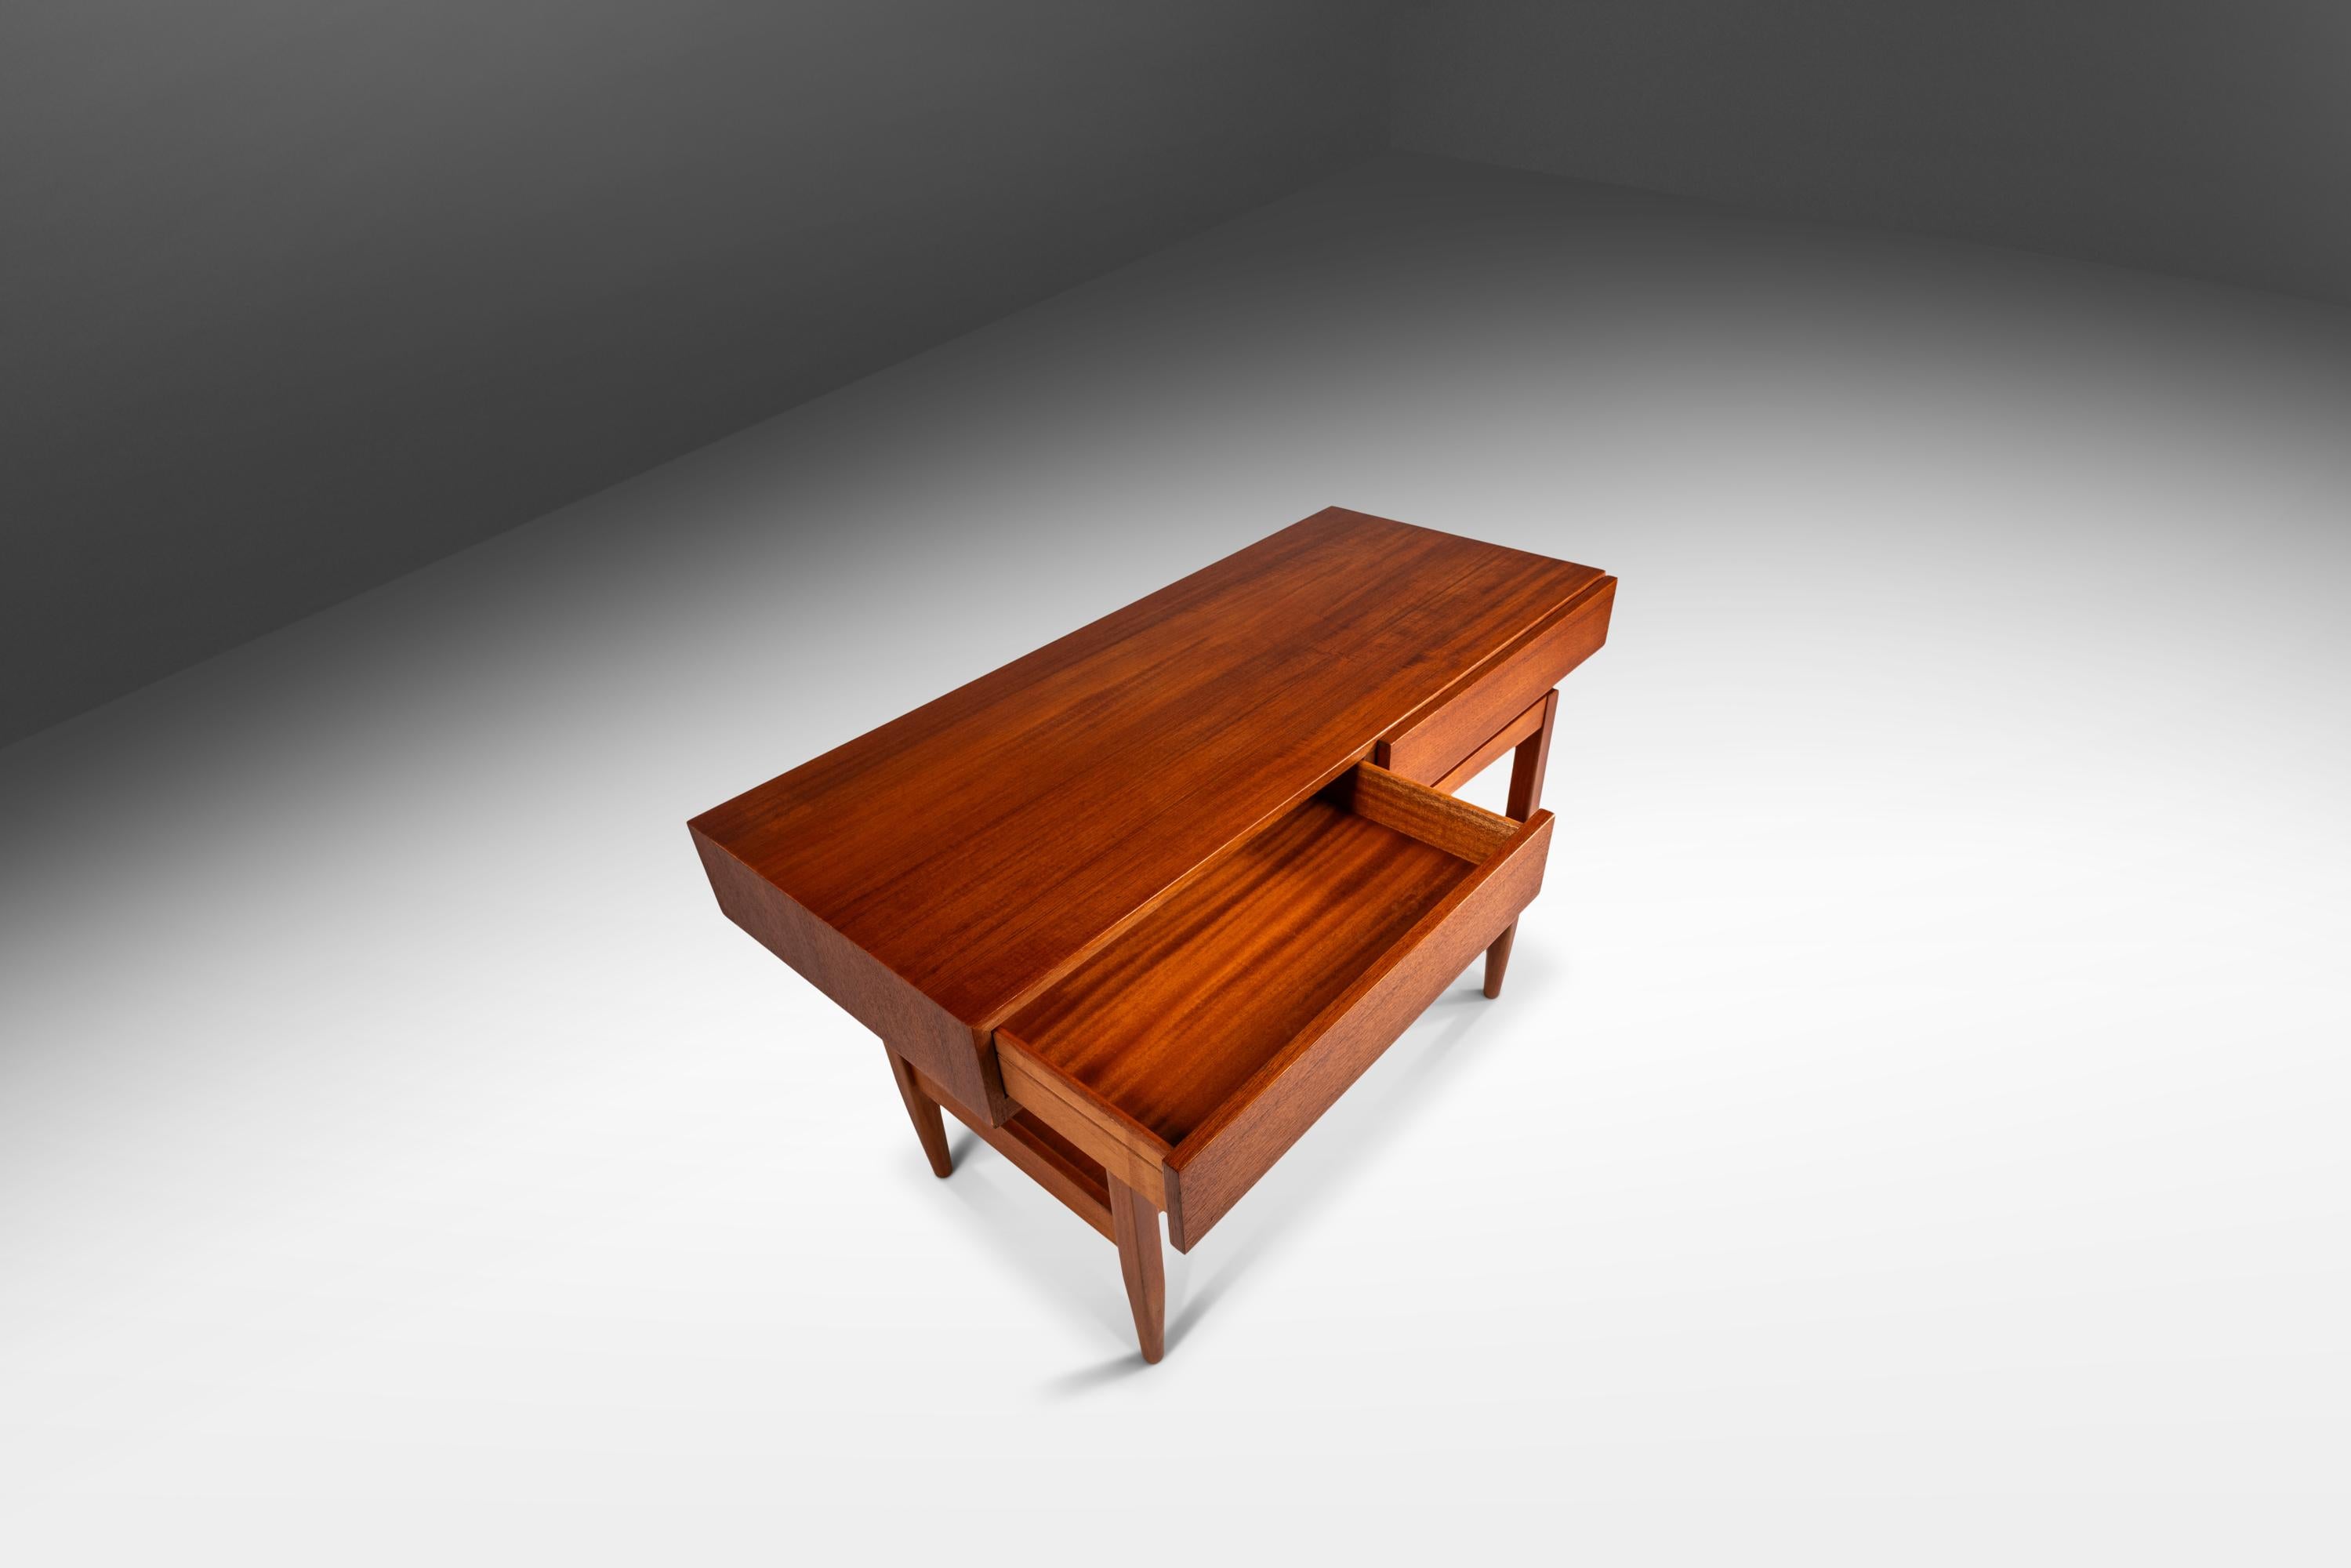 Voici un véritable chef-d'œuvre de la modernité danoise : une rare table console en teck conçue par l'incomparable Ib Kofod Larsen pour Faarup Møbelfabrik. Cette table emblématique a été entièrement restaurée et remise à neuf, ce qui en fait le